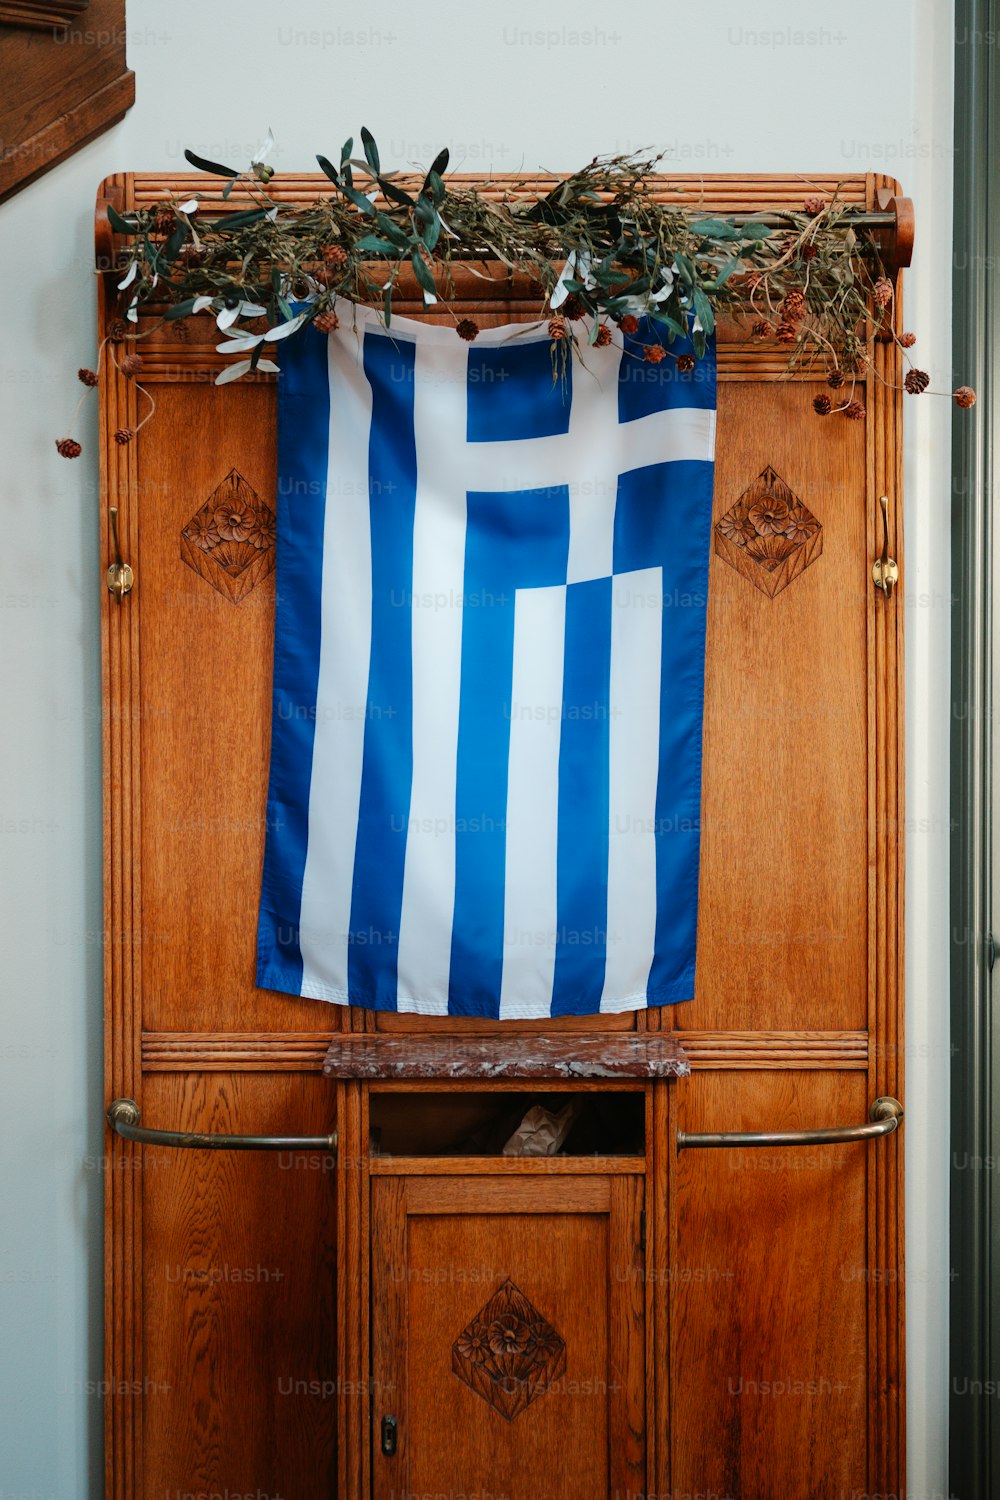 Una bandera azul y blanca colgada en un armario de madera